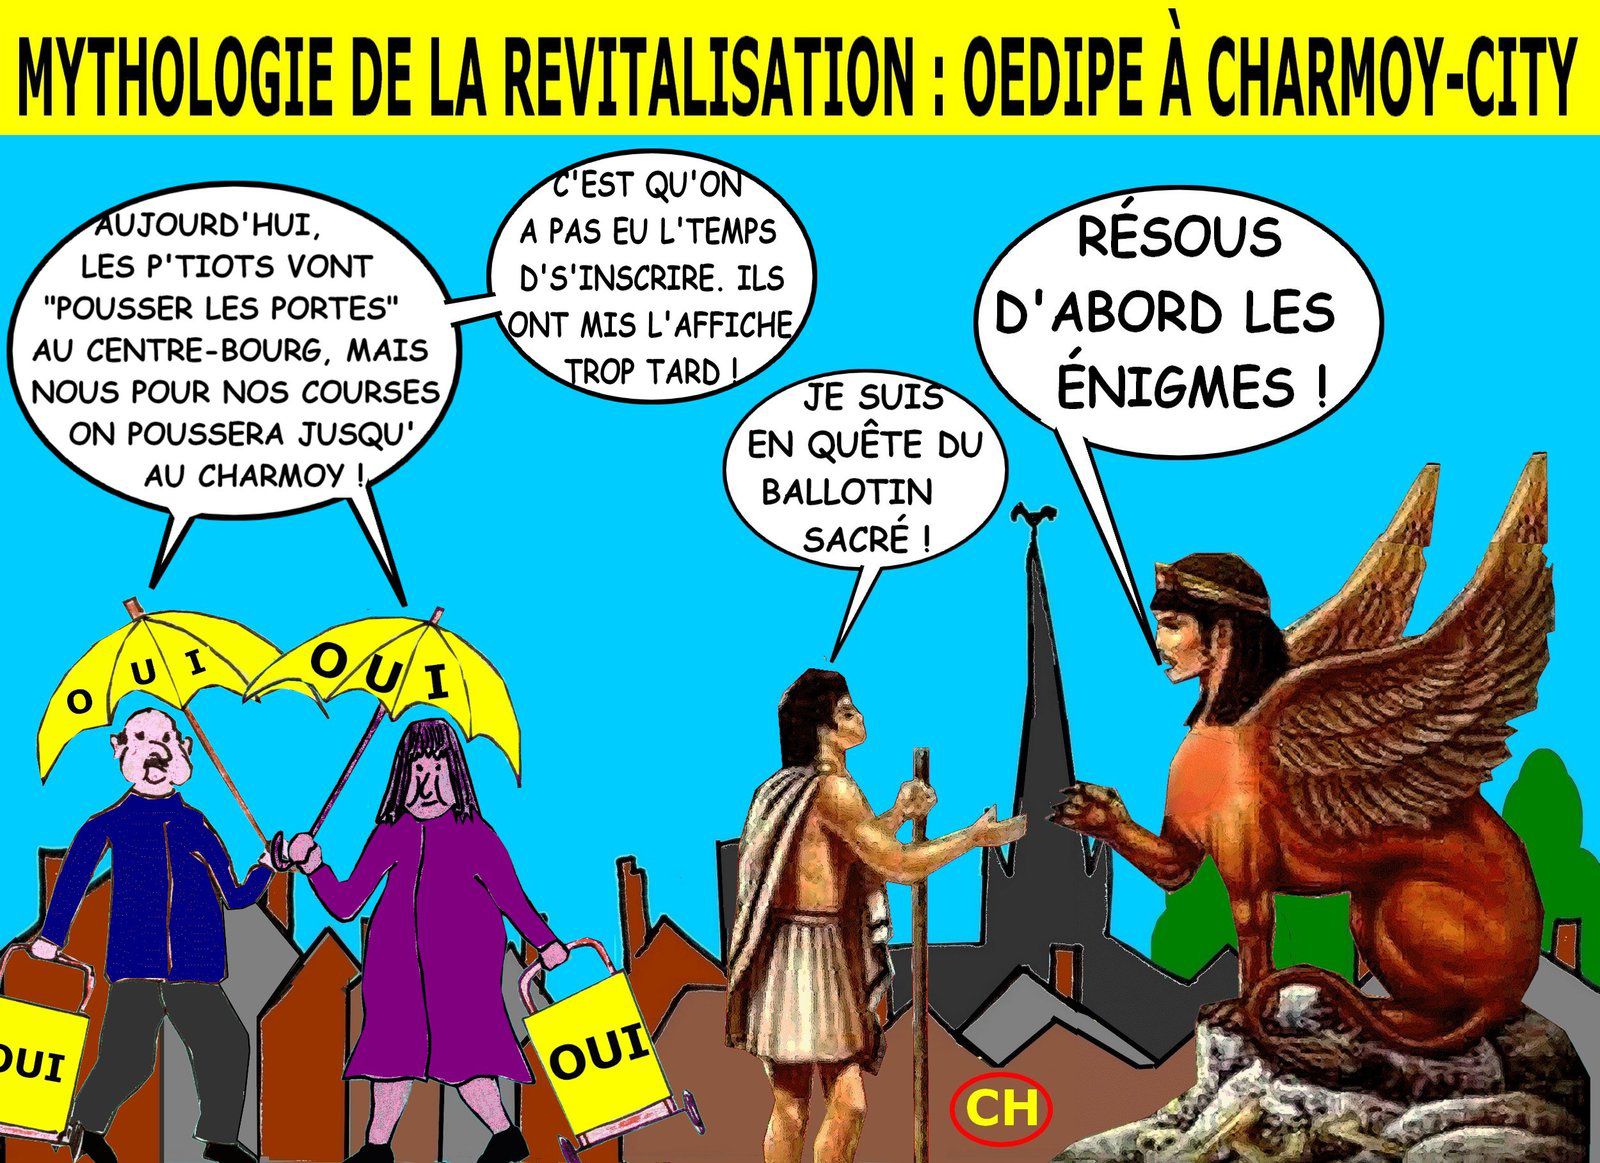 Mythologie de la revitalisation, Oedipe à Charmoy-City.jpg